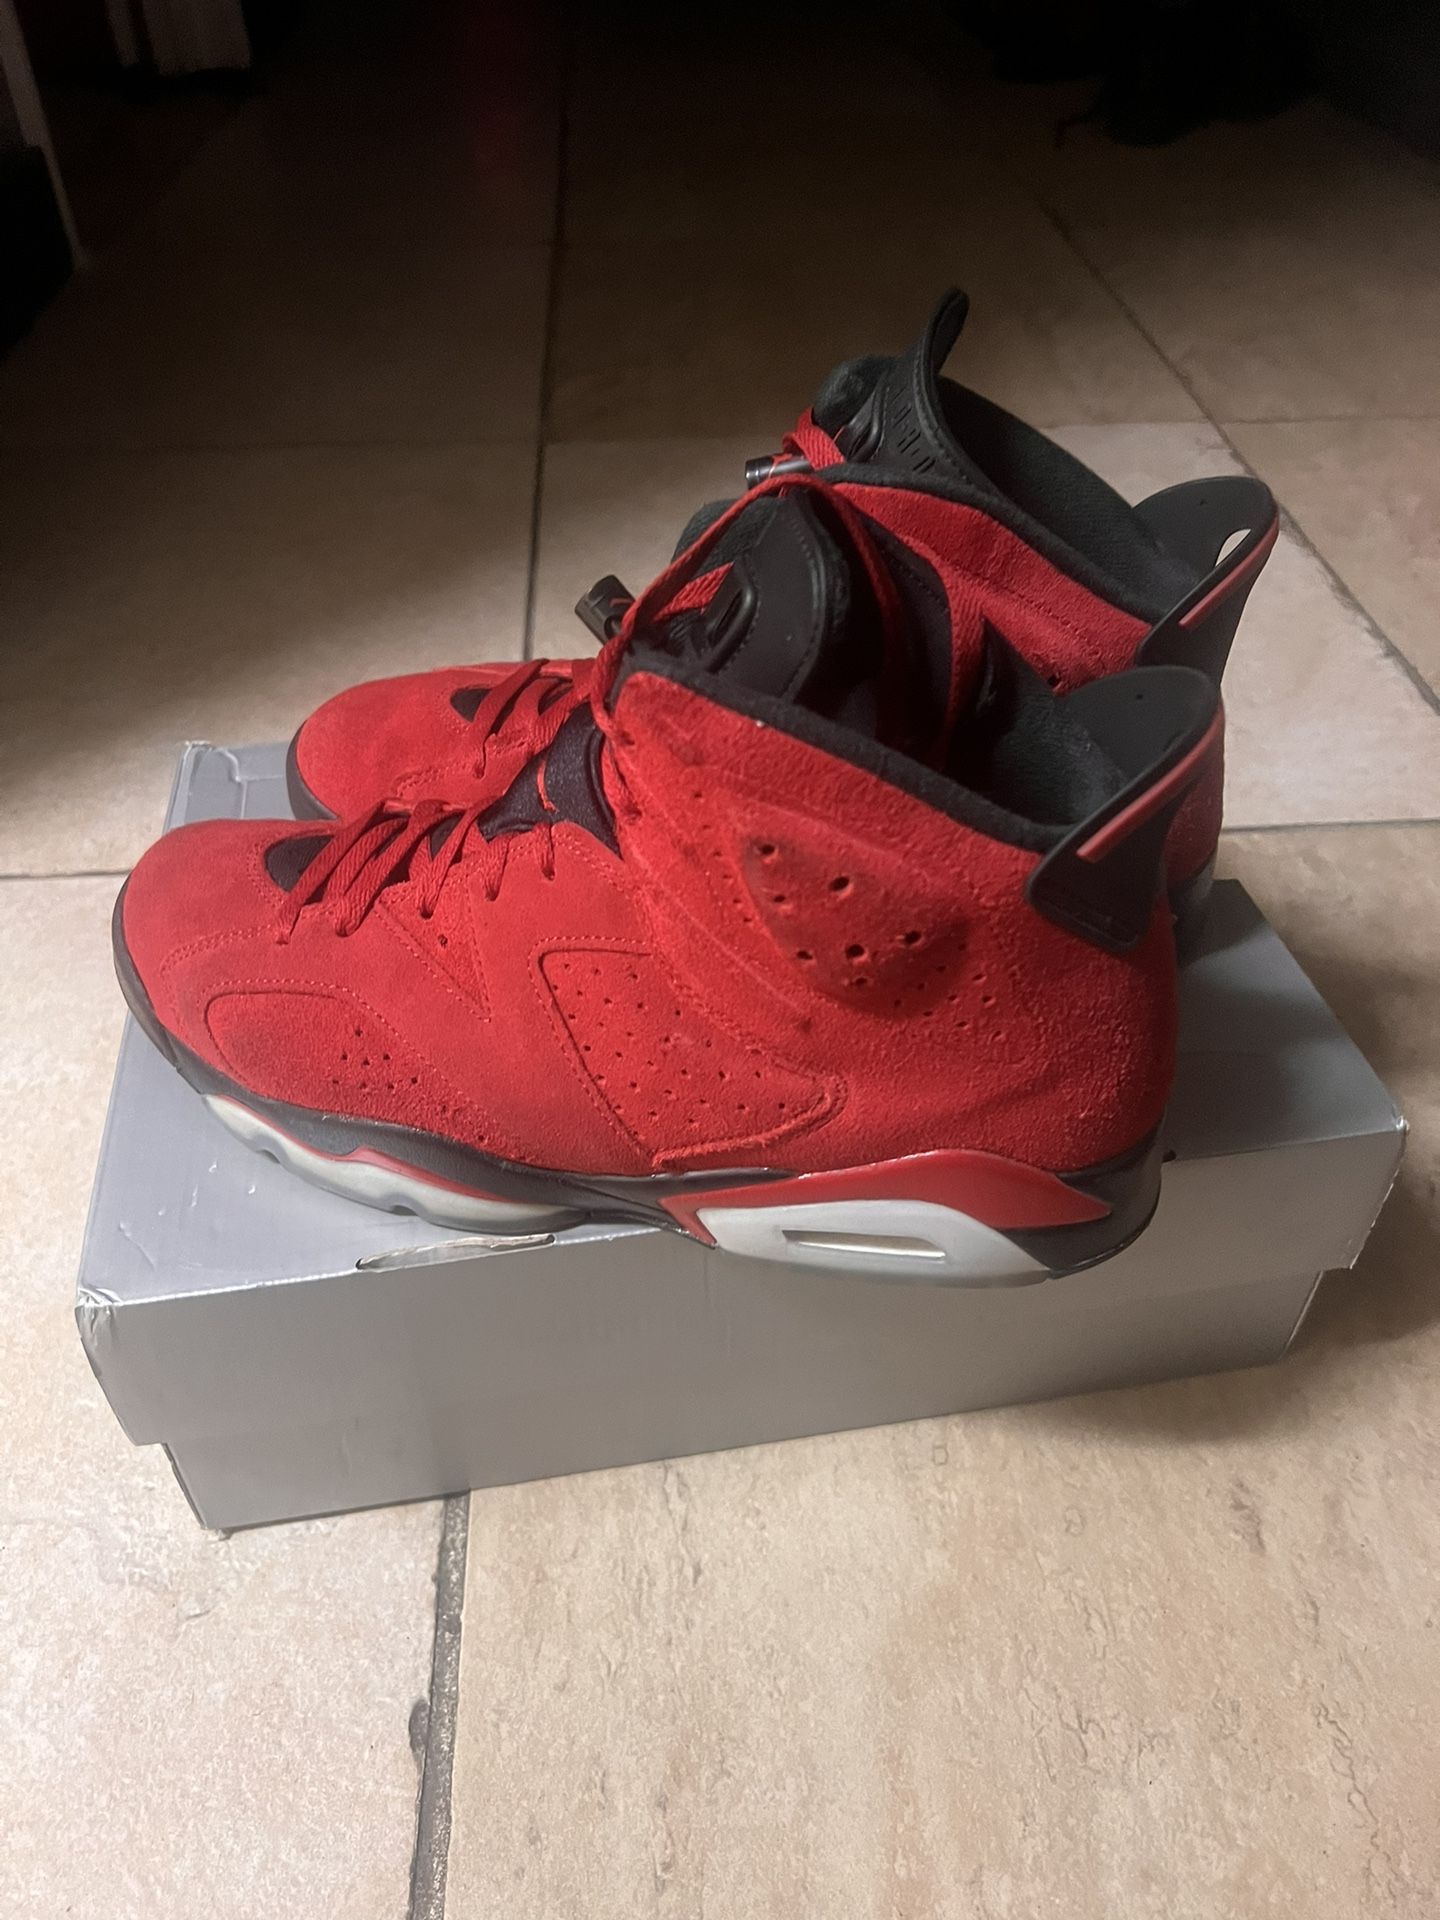 Air Jordan Retro 6 “Chicago red Suede” Men’s Size 10.5